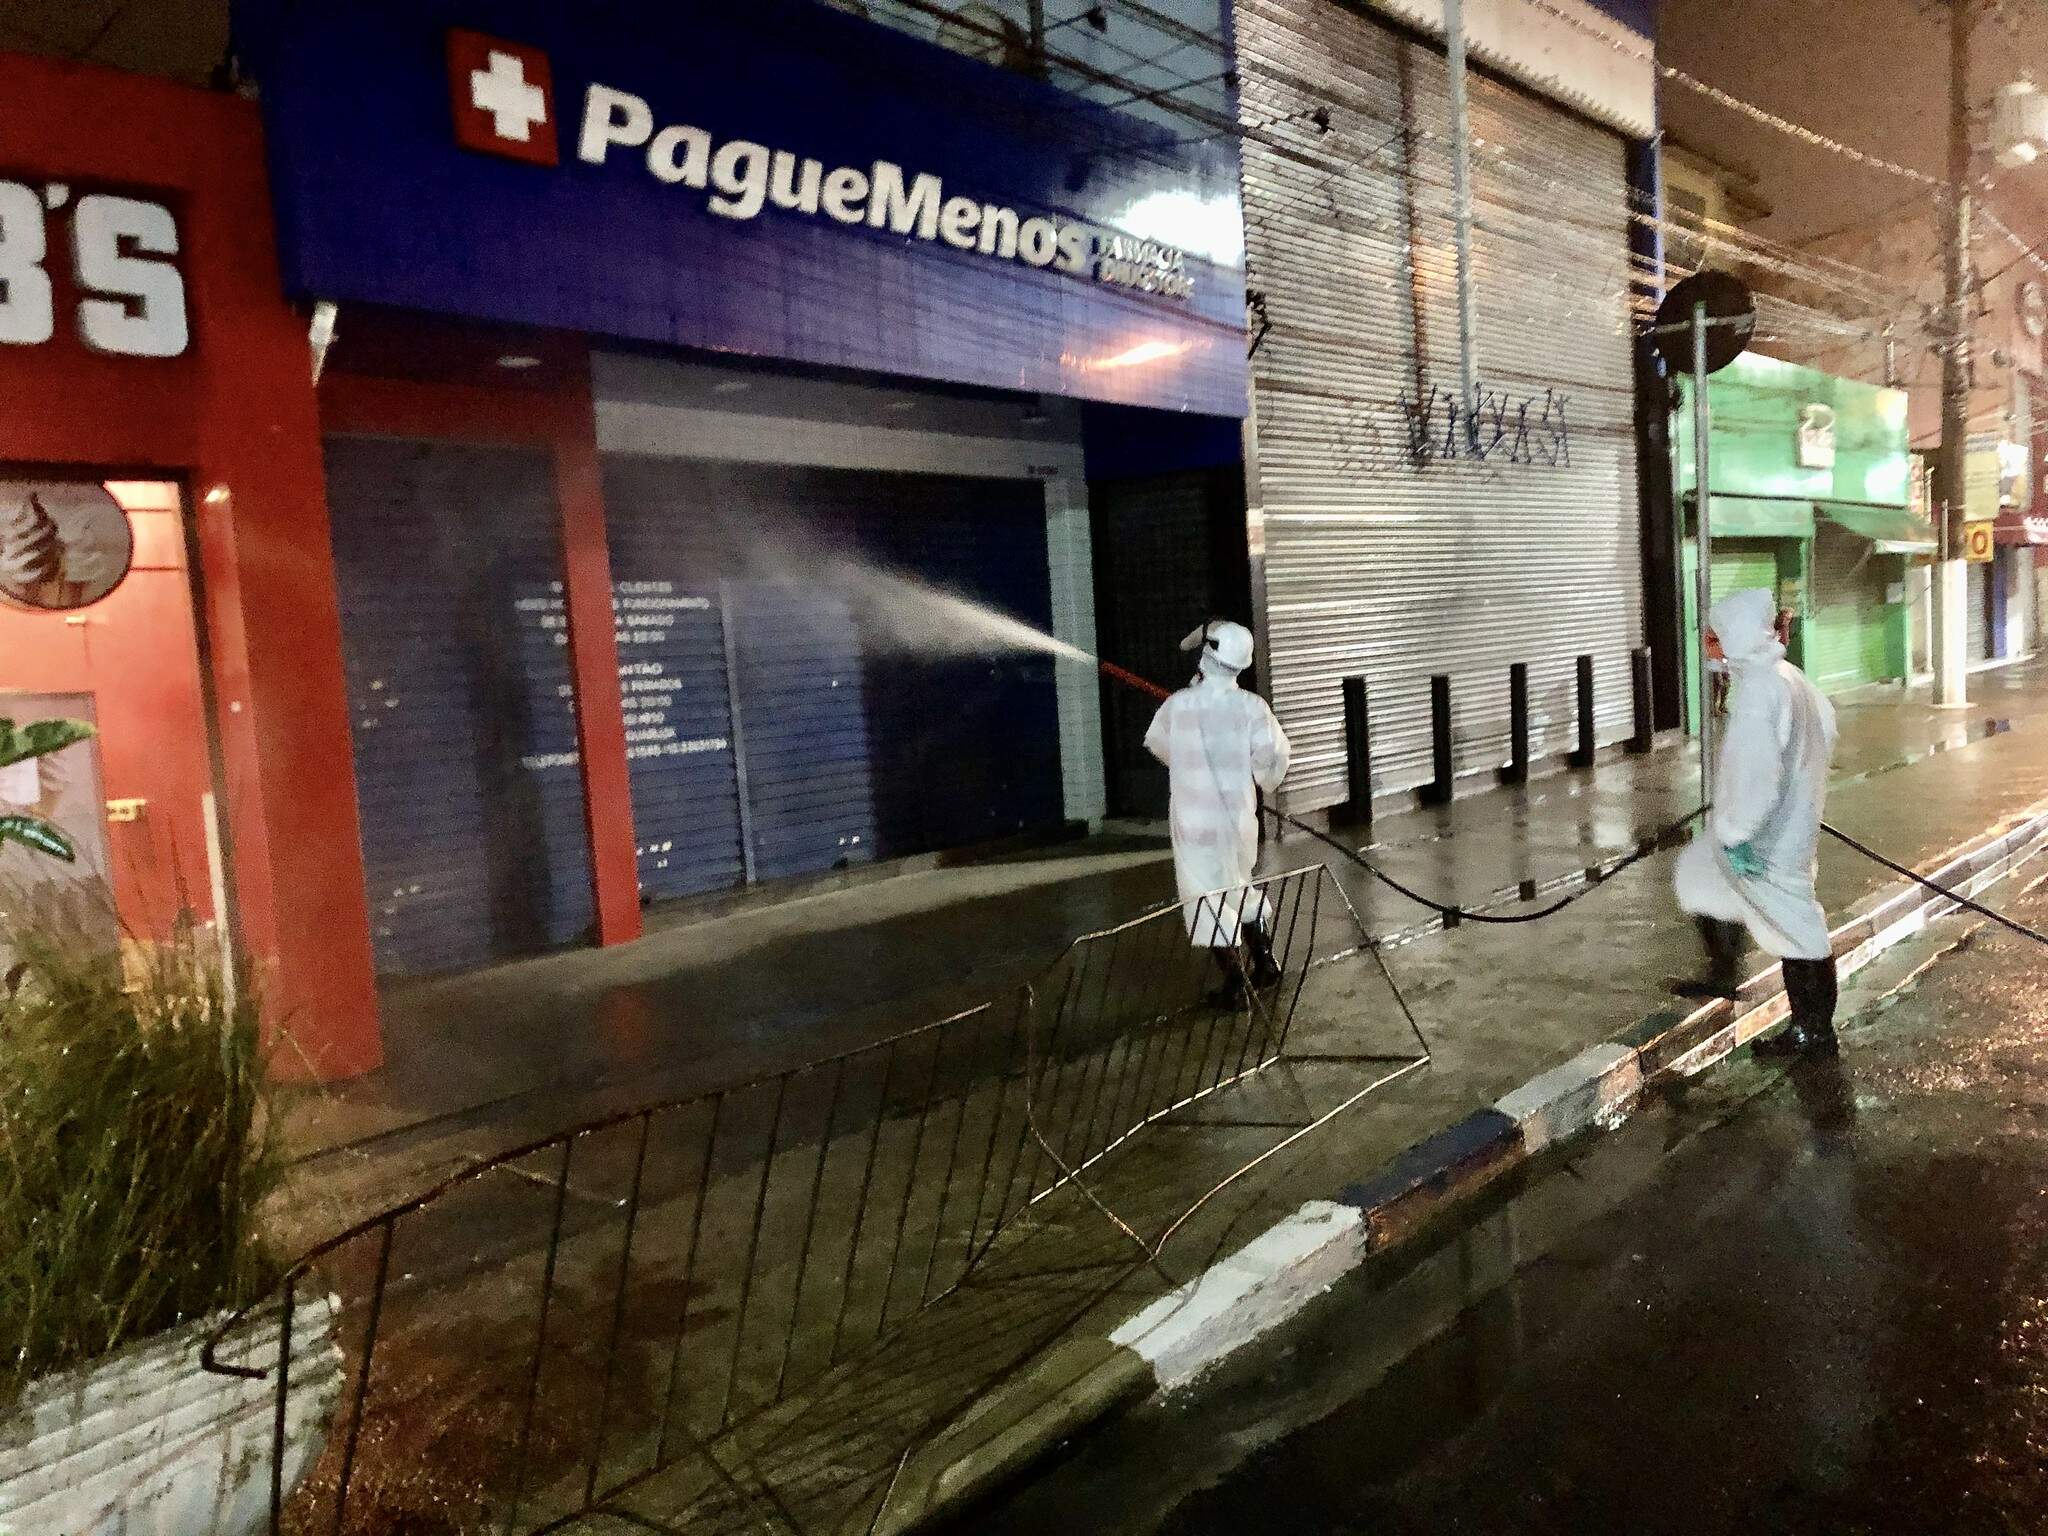 Foco do comércio na Cidade, a Avenida Thiago Ferreira foi desinfectada antes de reabrir